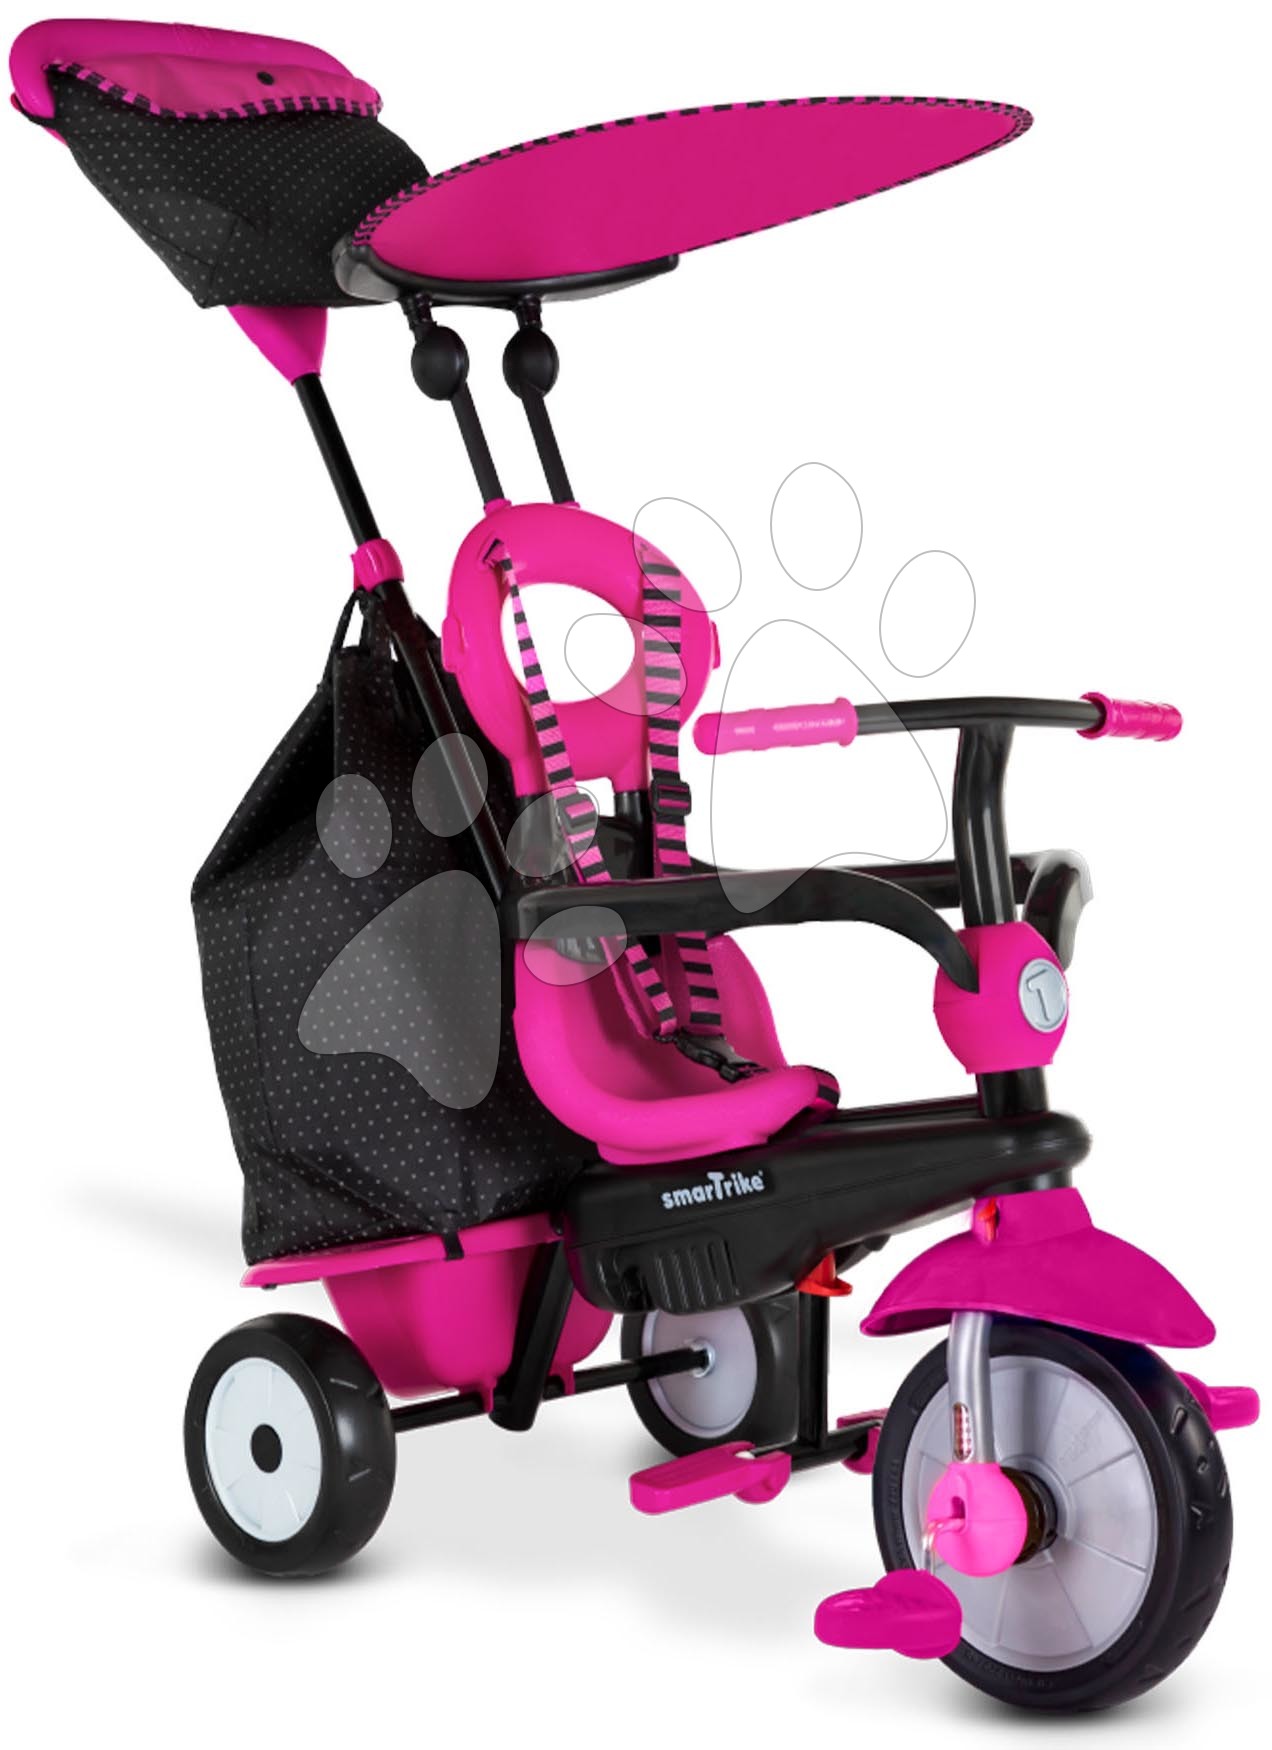 Kinderdreiräder ab 10 Monaten - Dreirad Vanilla Plus Pink Classic smarTrike Touch Steering Steuerung mit Gummirädern und Stoßdämpfer 2 Taschen ab 15 Monaten